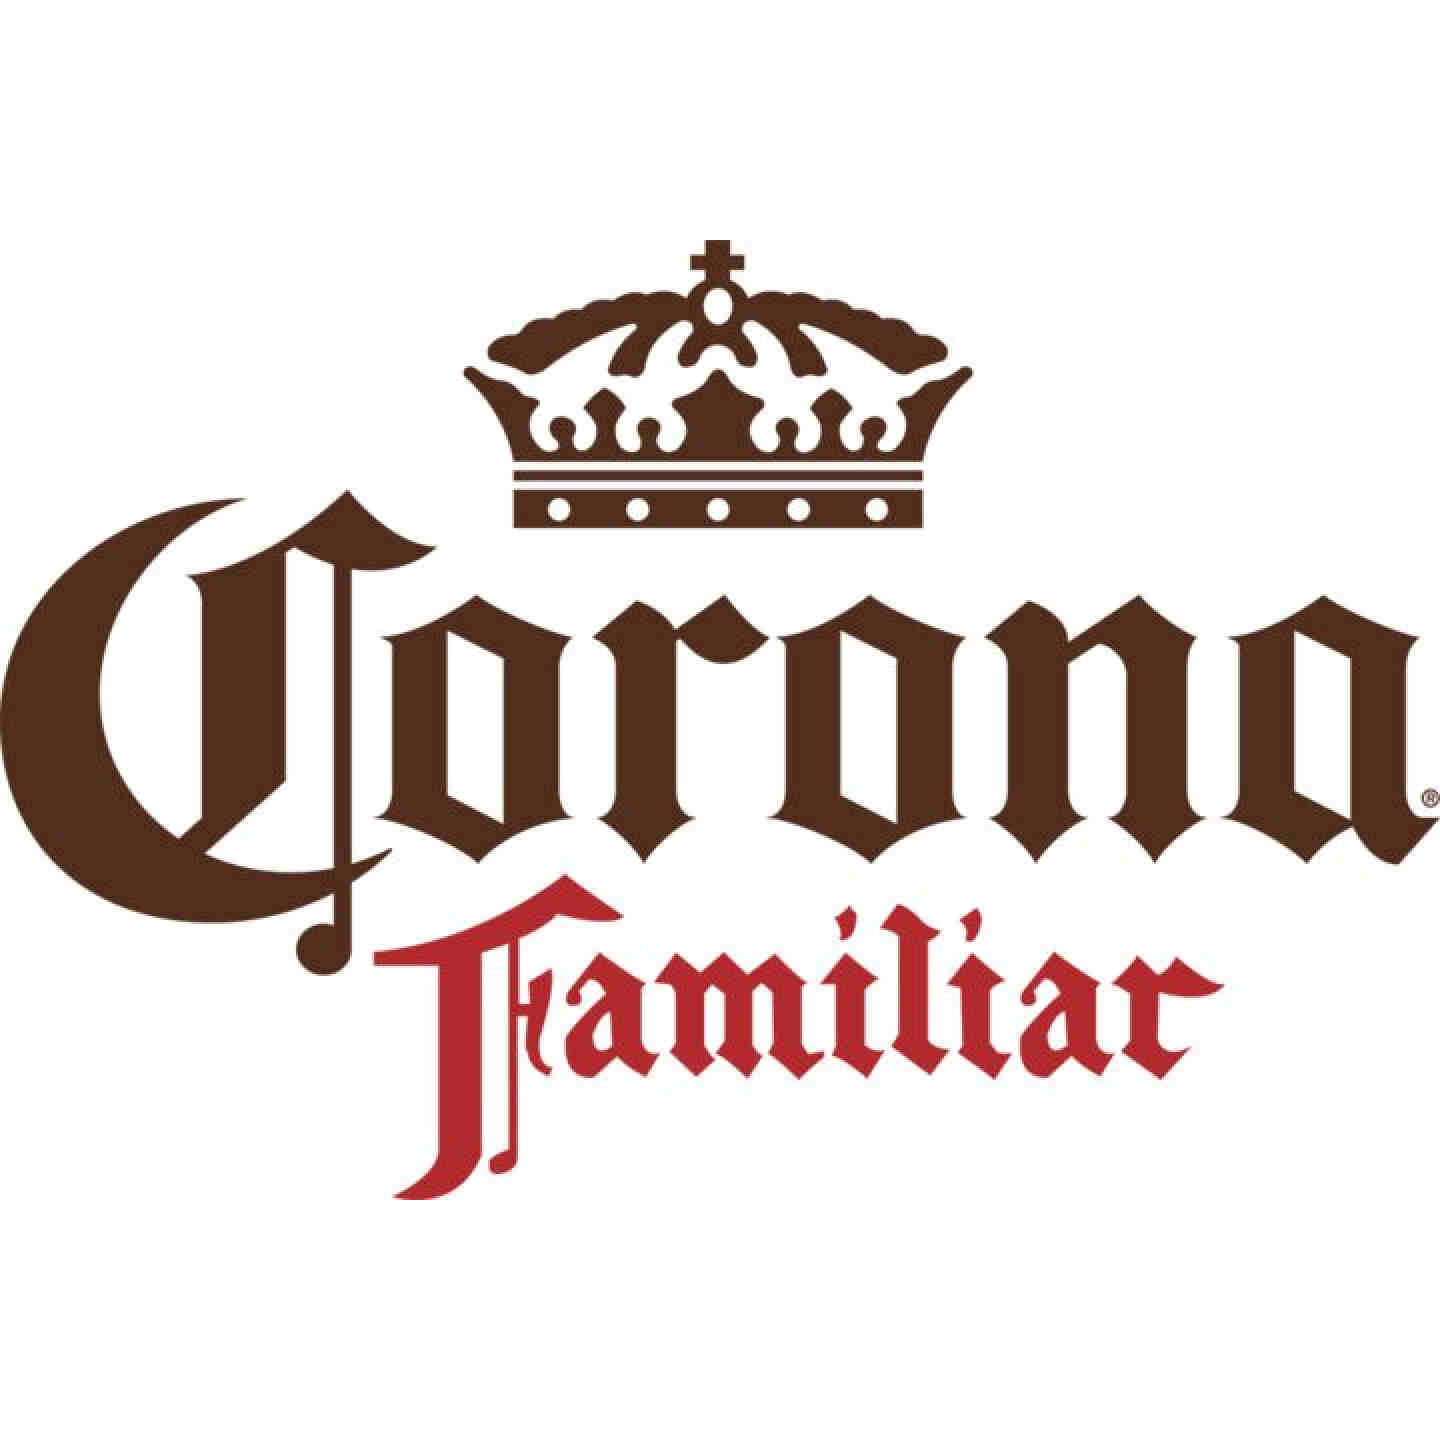 Corona Familiar Image 1